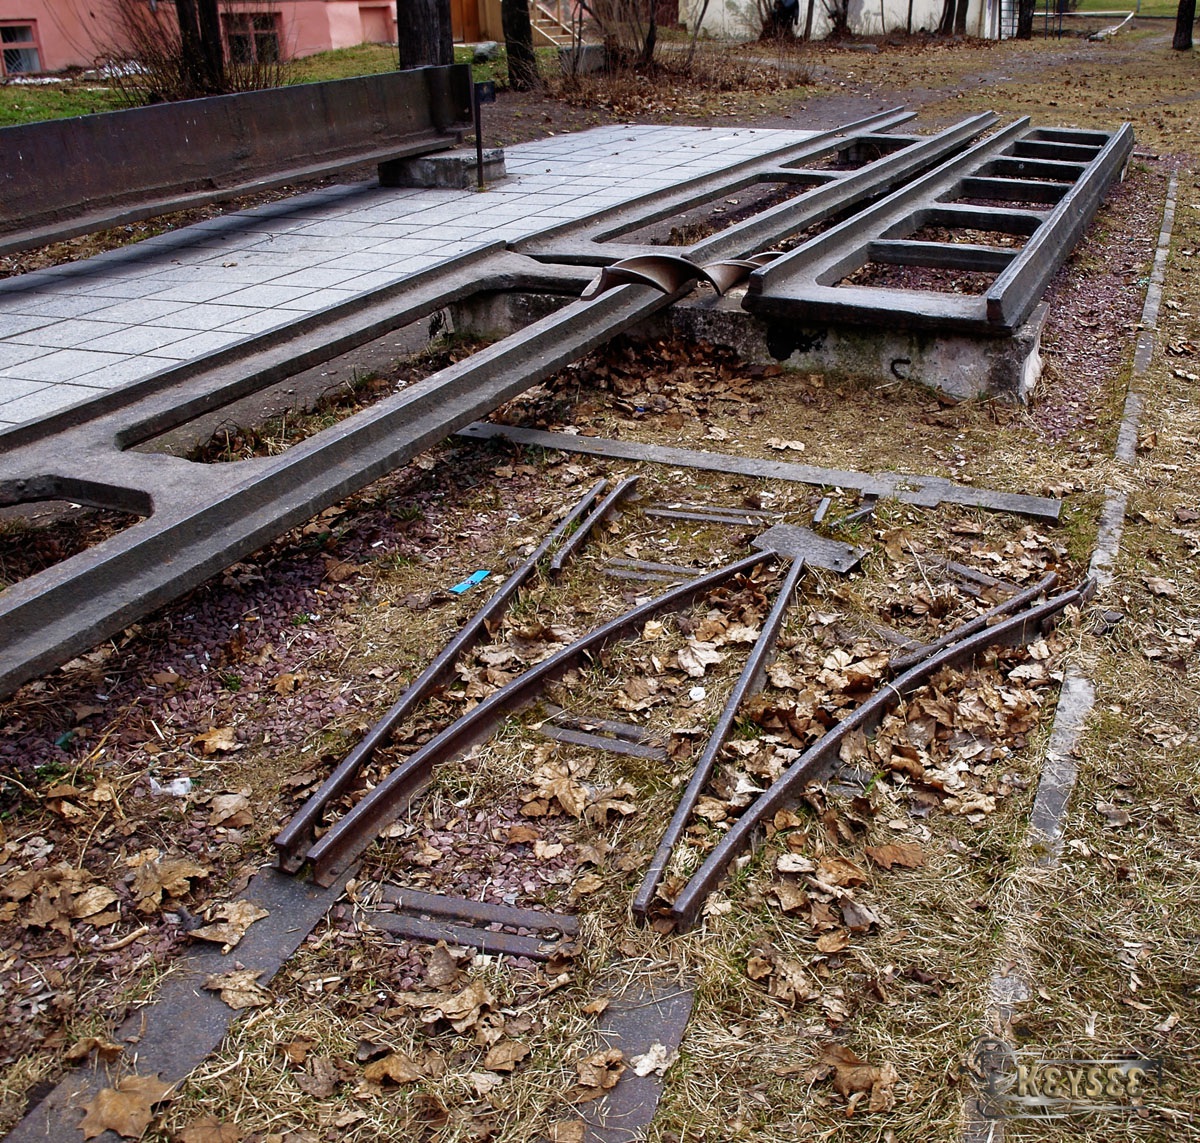 Петрозаводск. Чугунный колесопровод — первая в России колейная железная дорога, первая железная дорога в мире заводского пользования